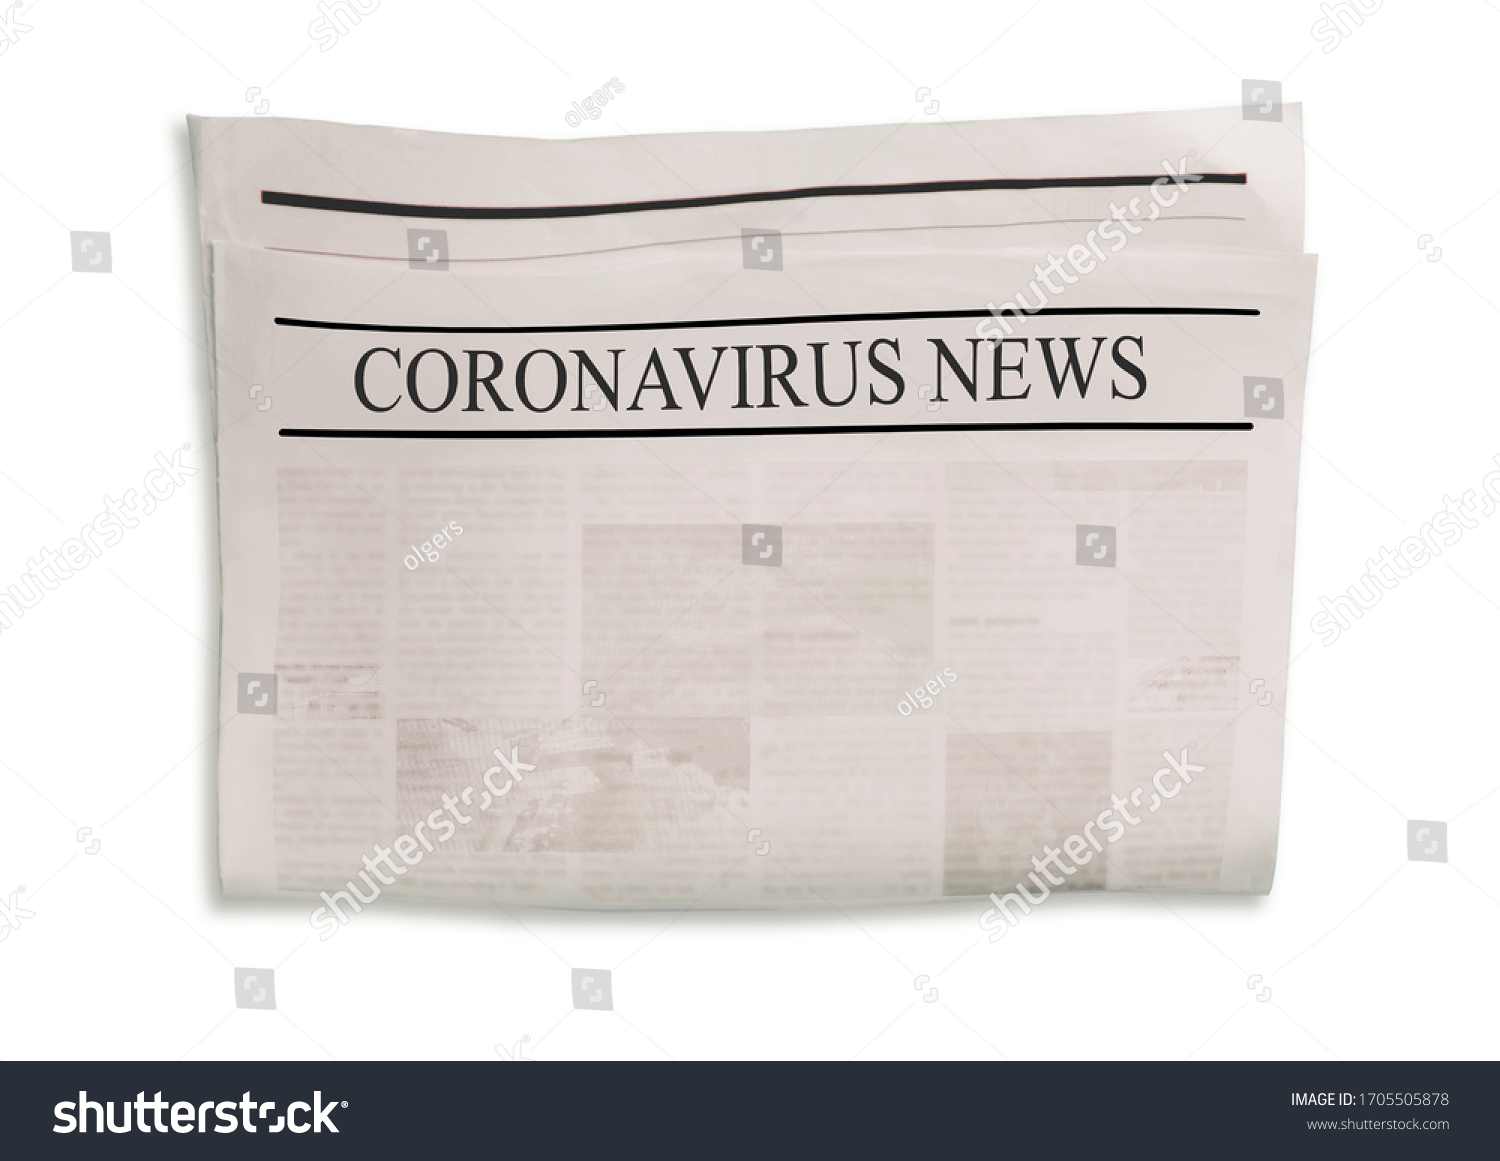 Coronavirus Covid19 News Newspaper Headlines On Stock Illustration